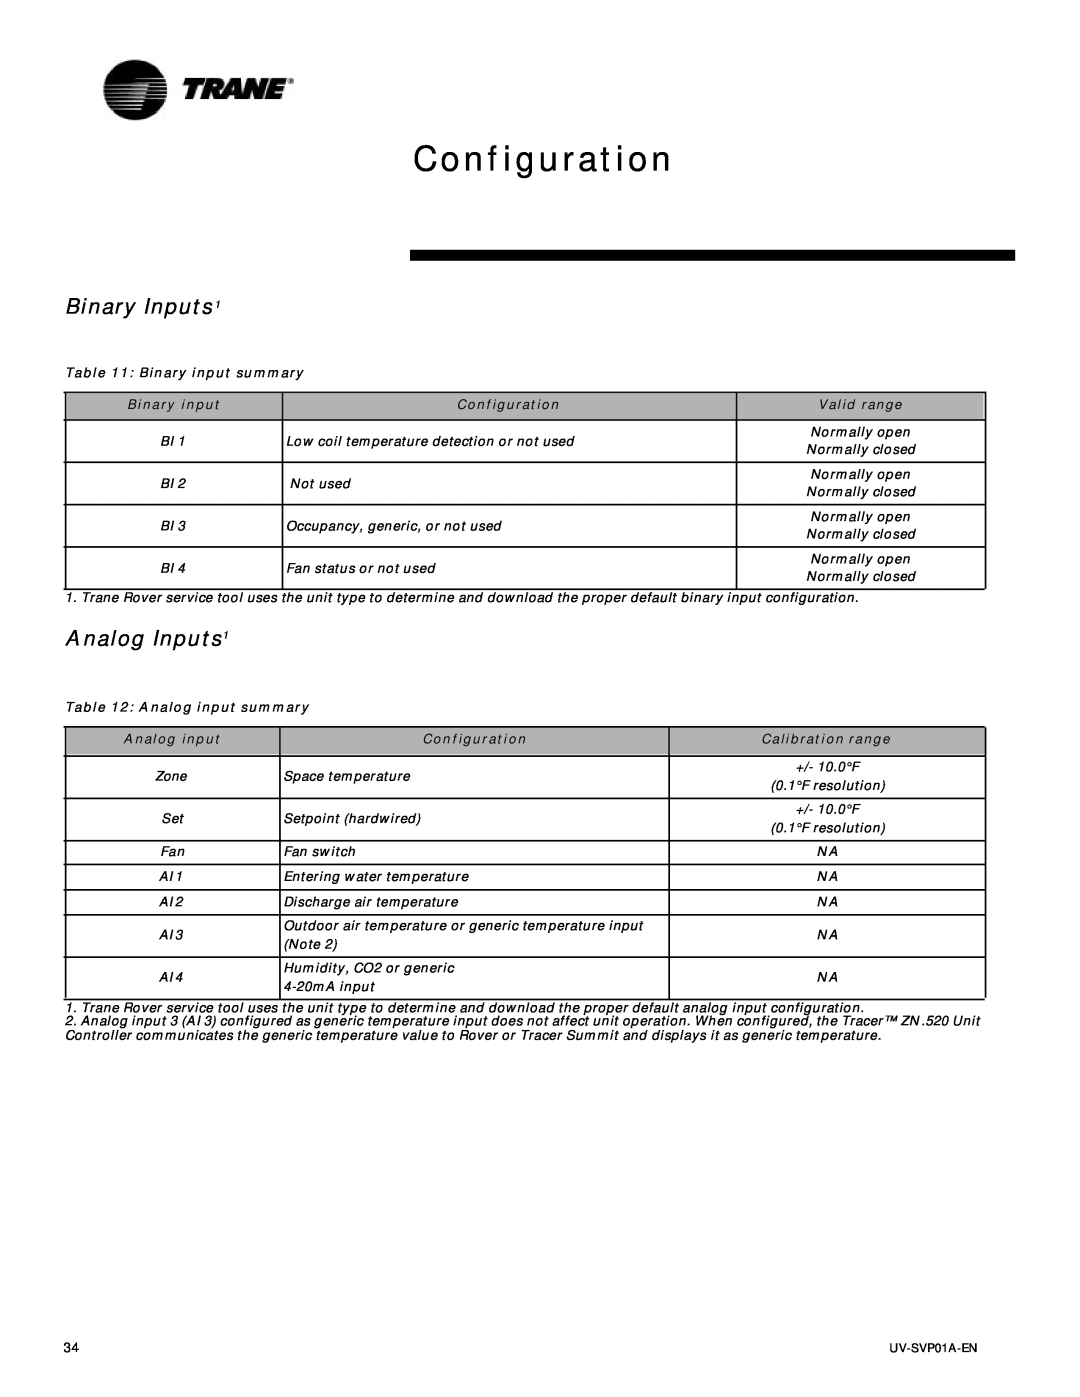 Trane Tracer Unit Ventilator Configuration, Binary input summary, Valid range, Analog input summary, Calibration range 